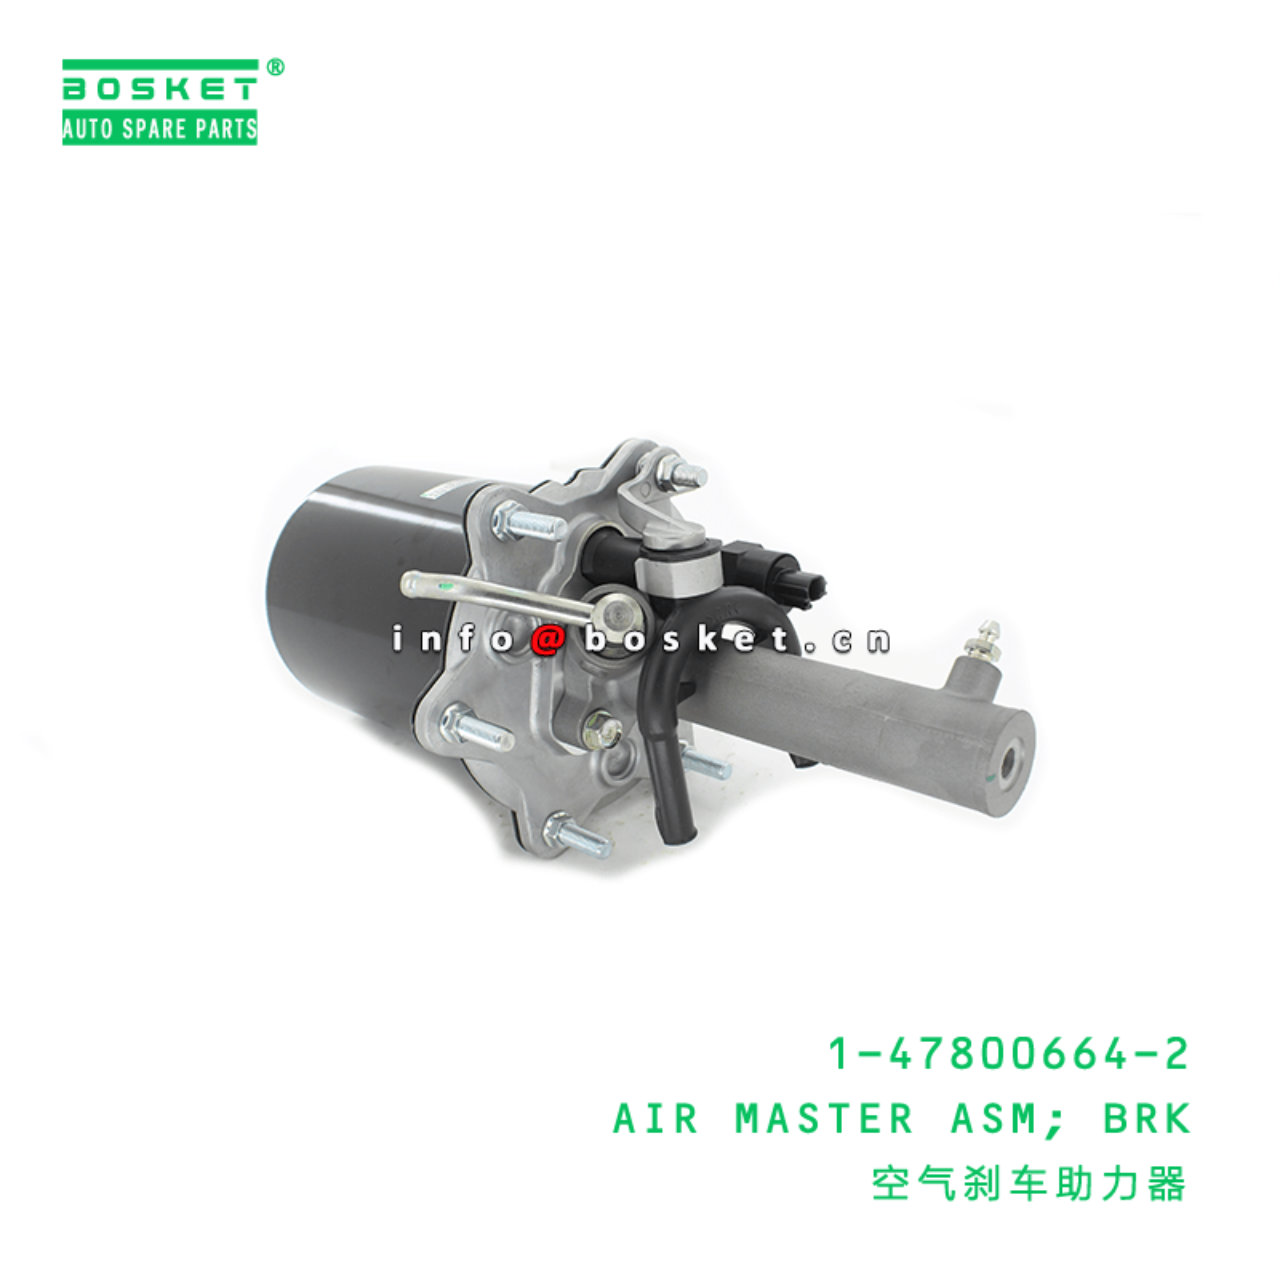 1-47800664-2 Brake Air Master Assembly Suitable for ISUZU FSR FTR 1478006642